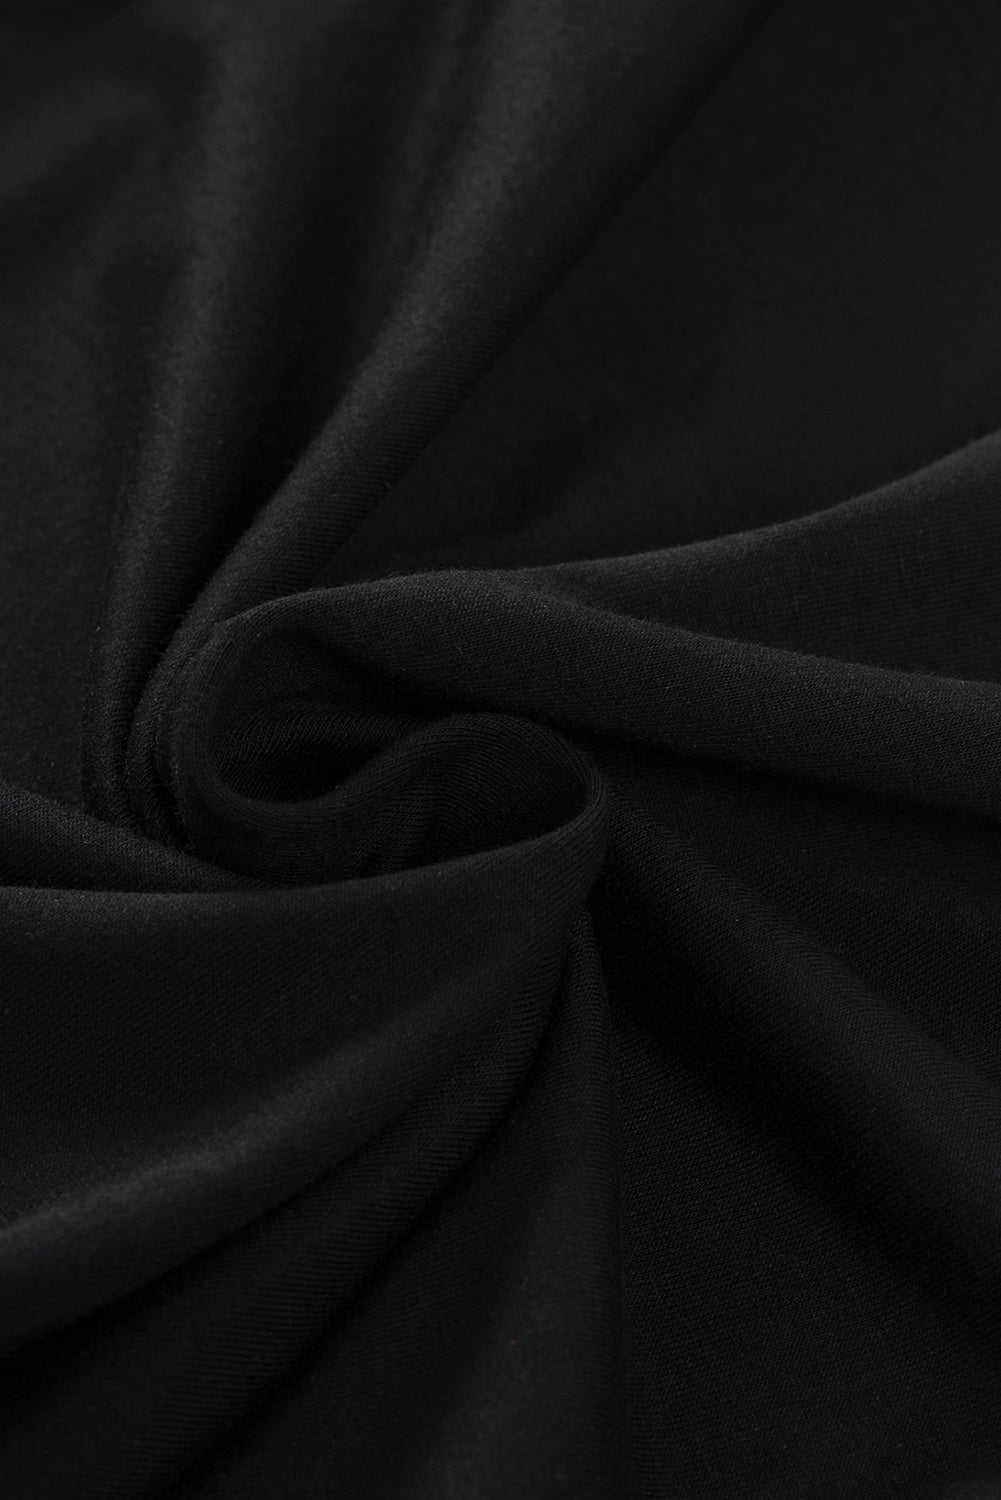 Black Solid Color Basic Bubble Sleeve Plain Blouse